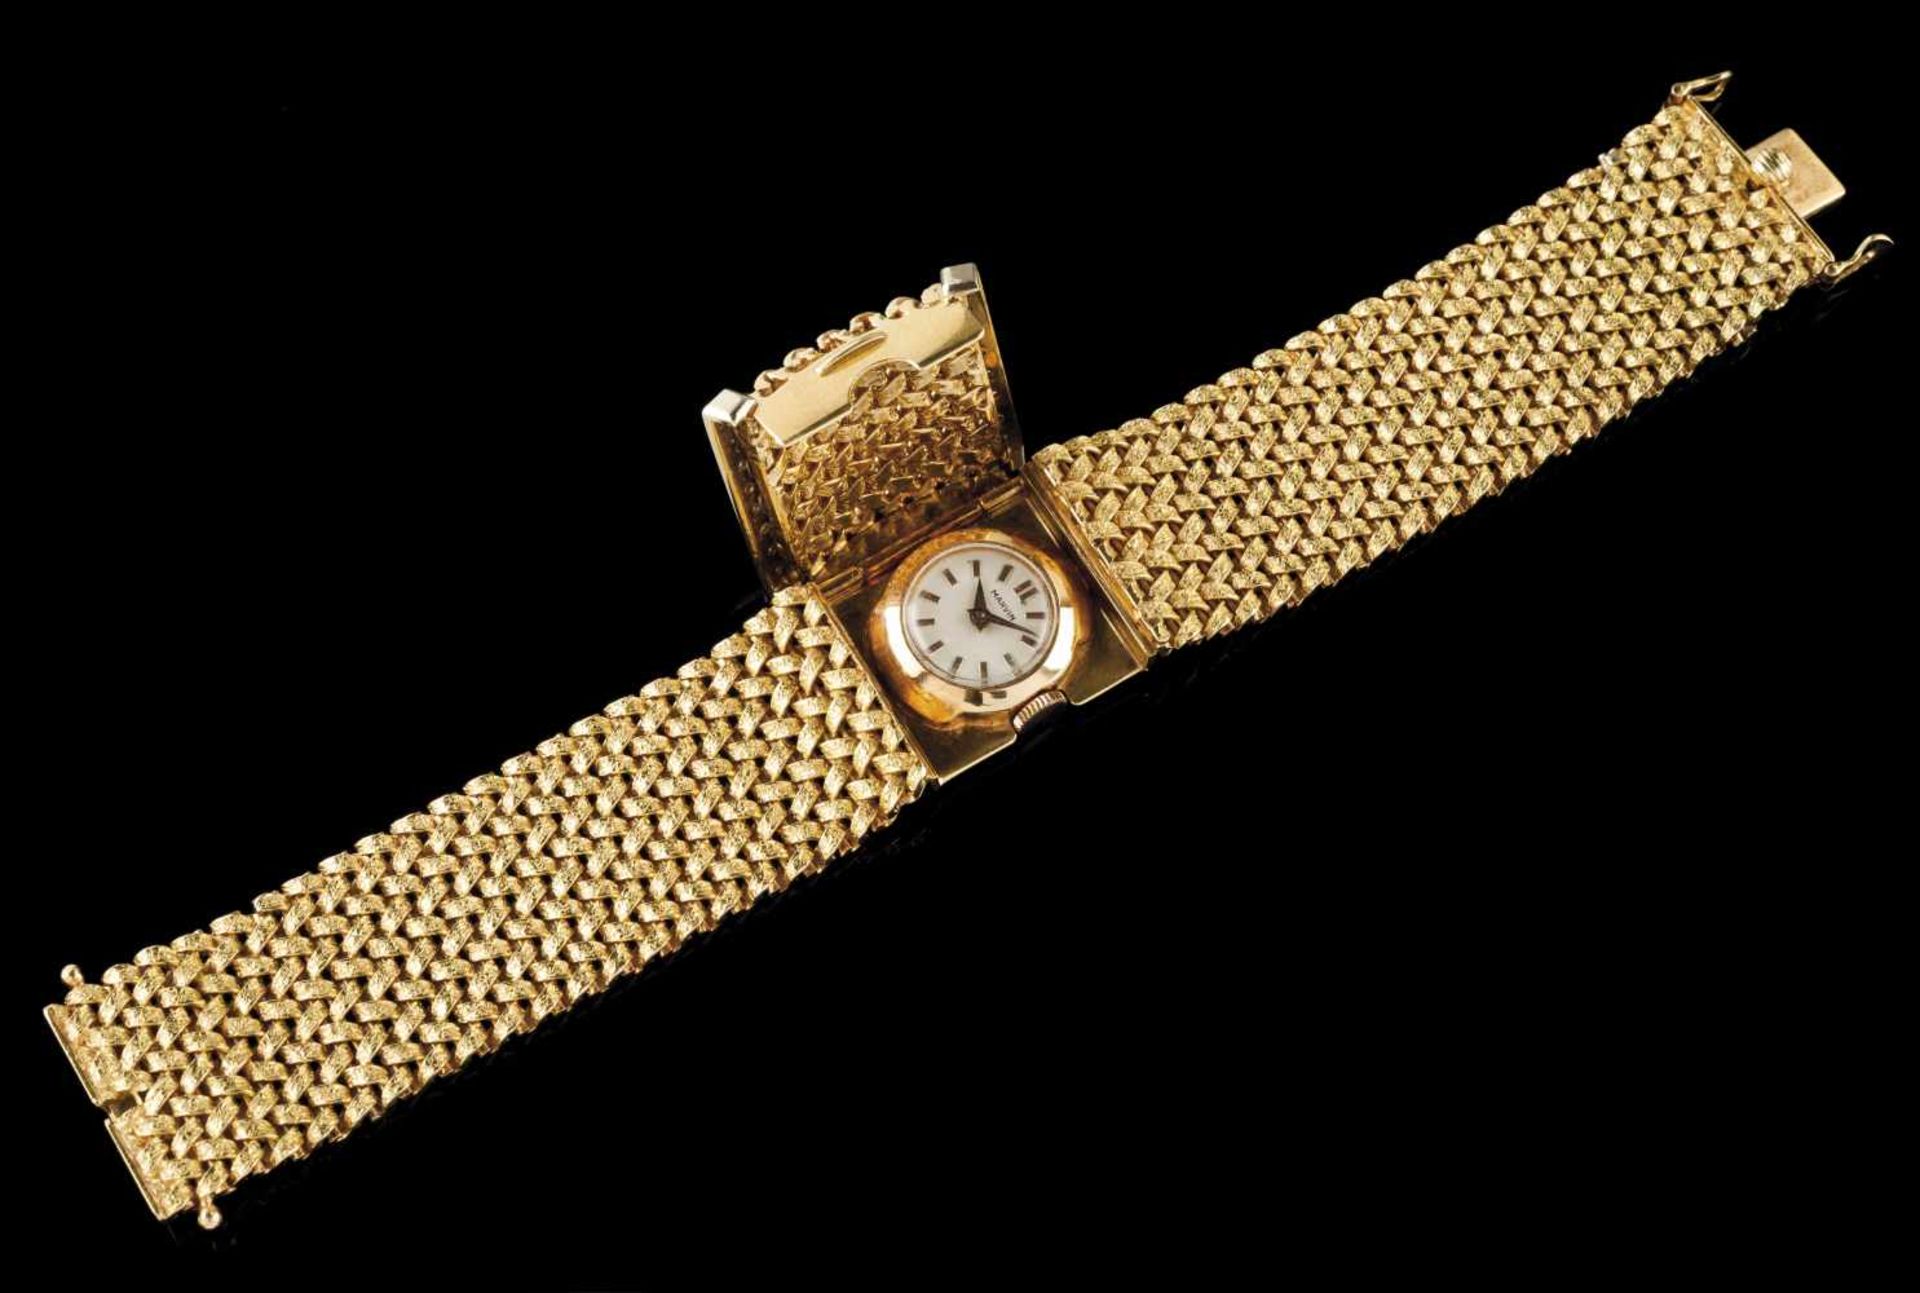 A watch strap